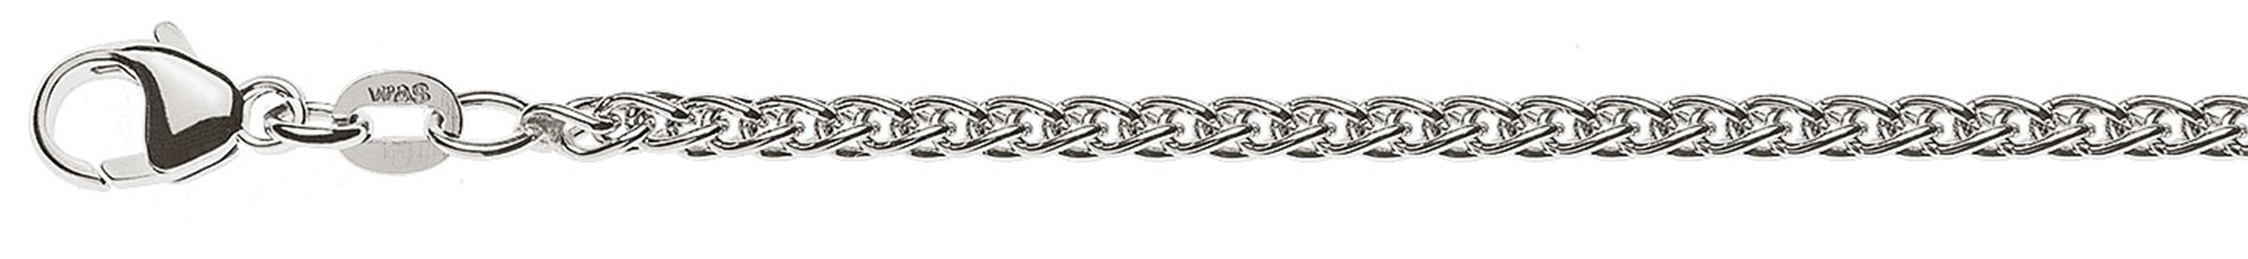 AURONOS Prestige Necklace white gold 18K cable chain 60cm 2.5mm